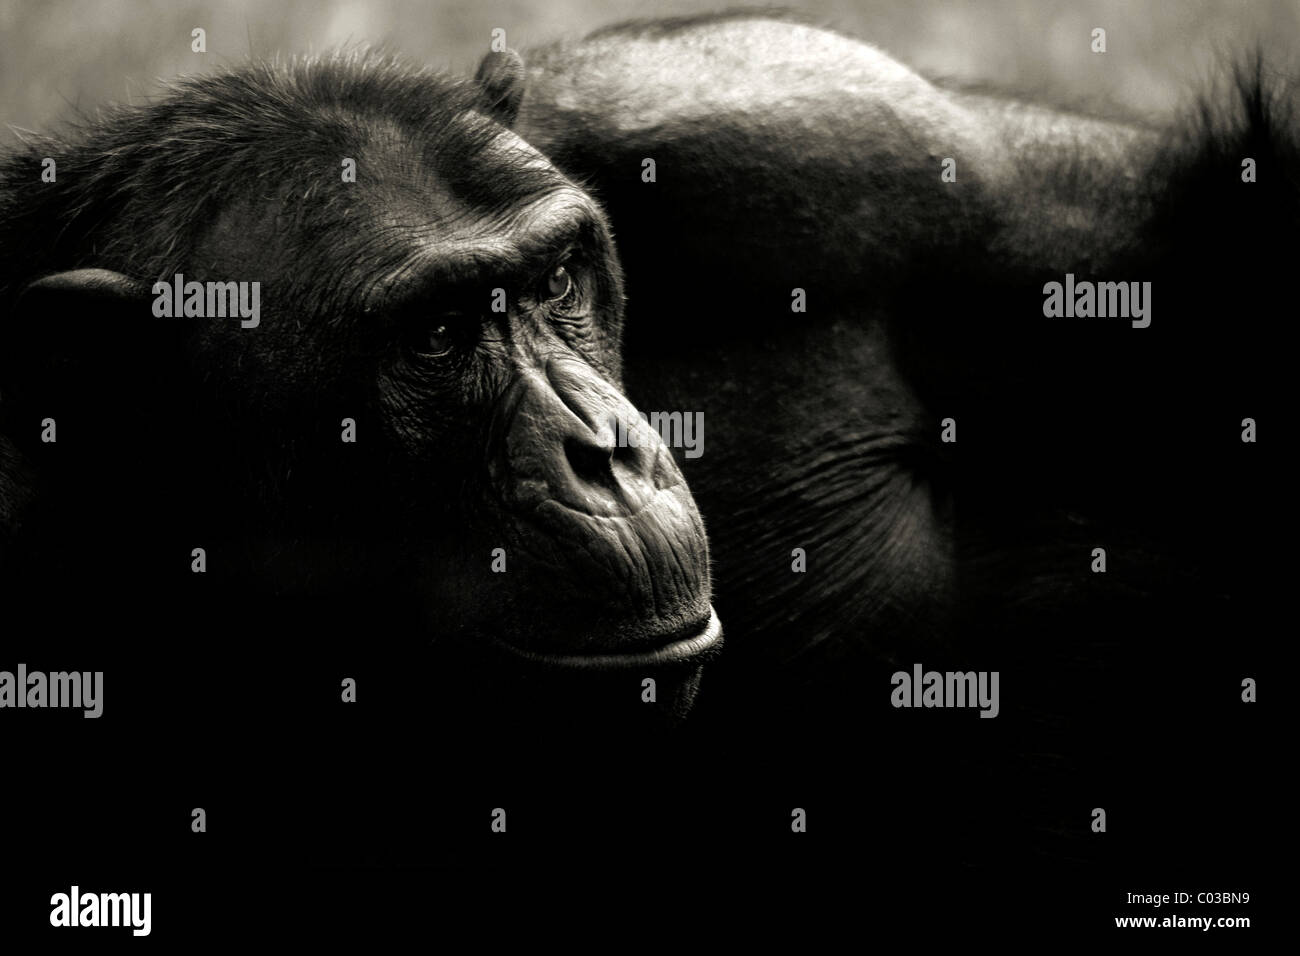 Male chimpanzee Stock Photo